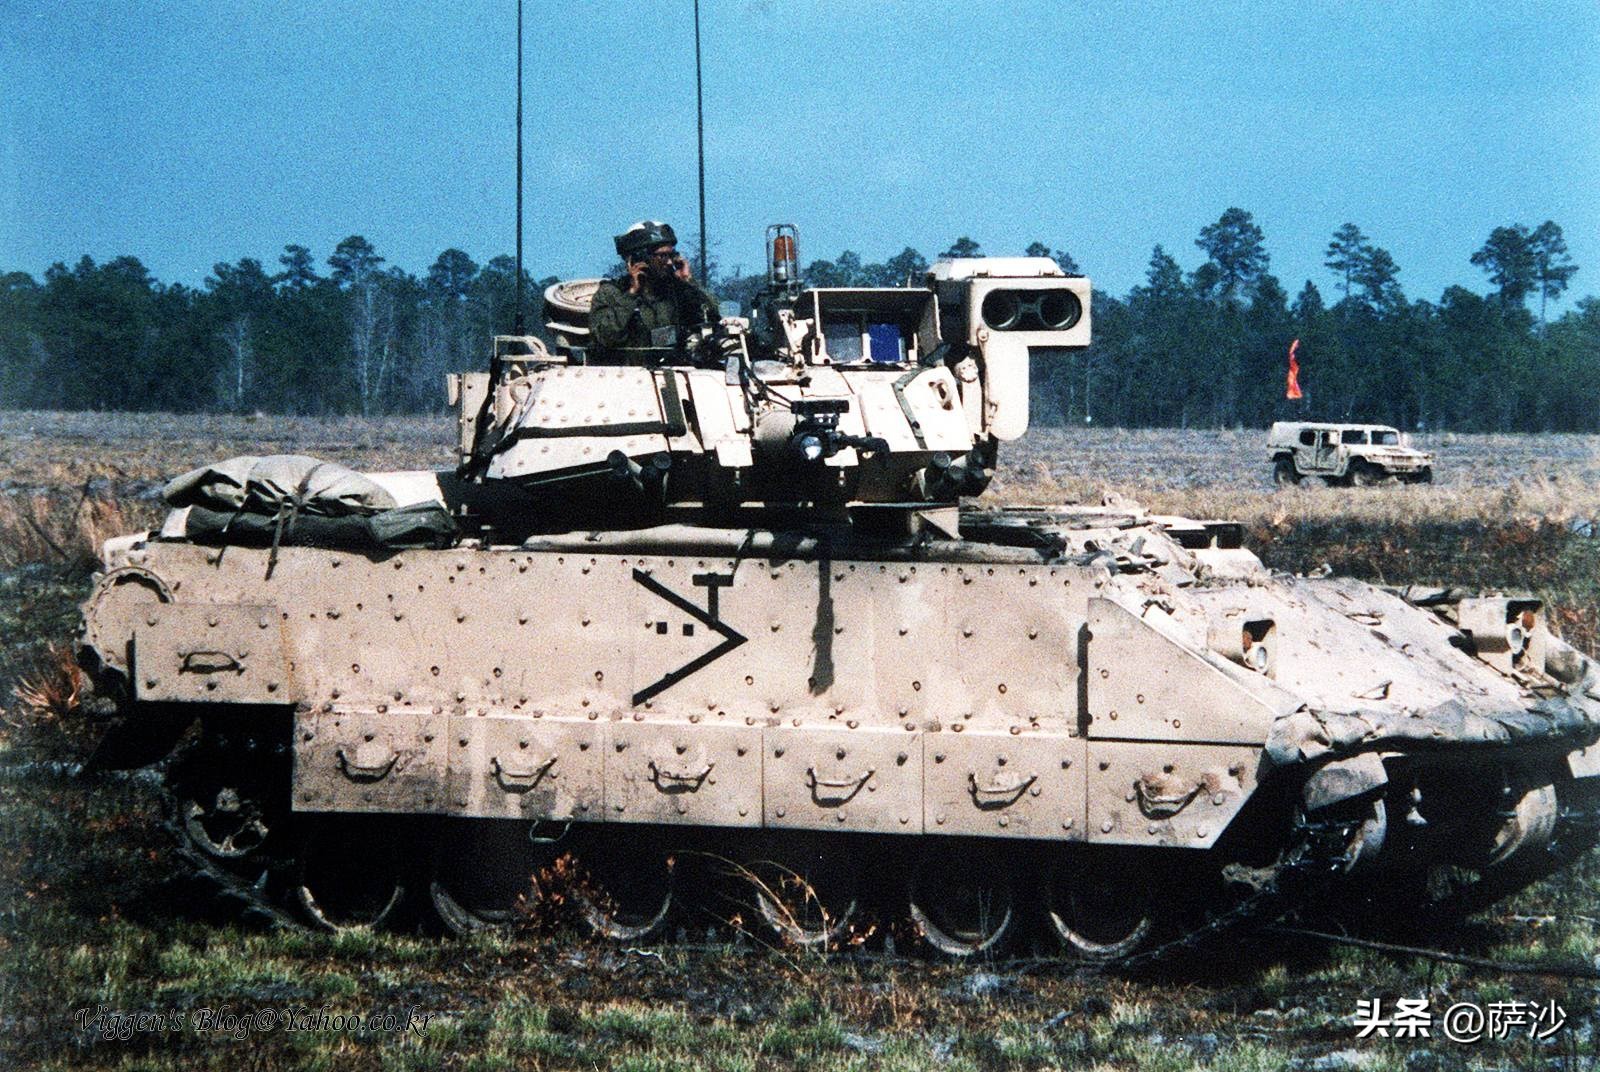 同为现役主力步兵战车，BMP-3要比M2布拉德利更优秀吗？